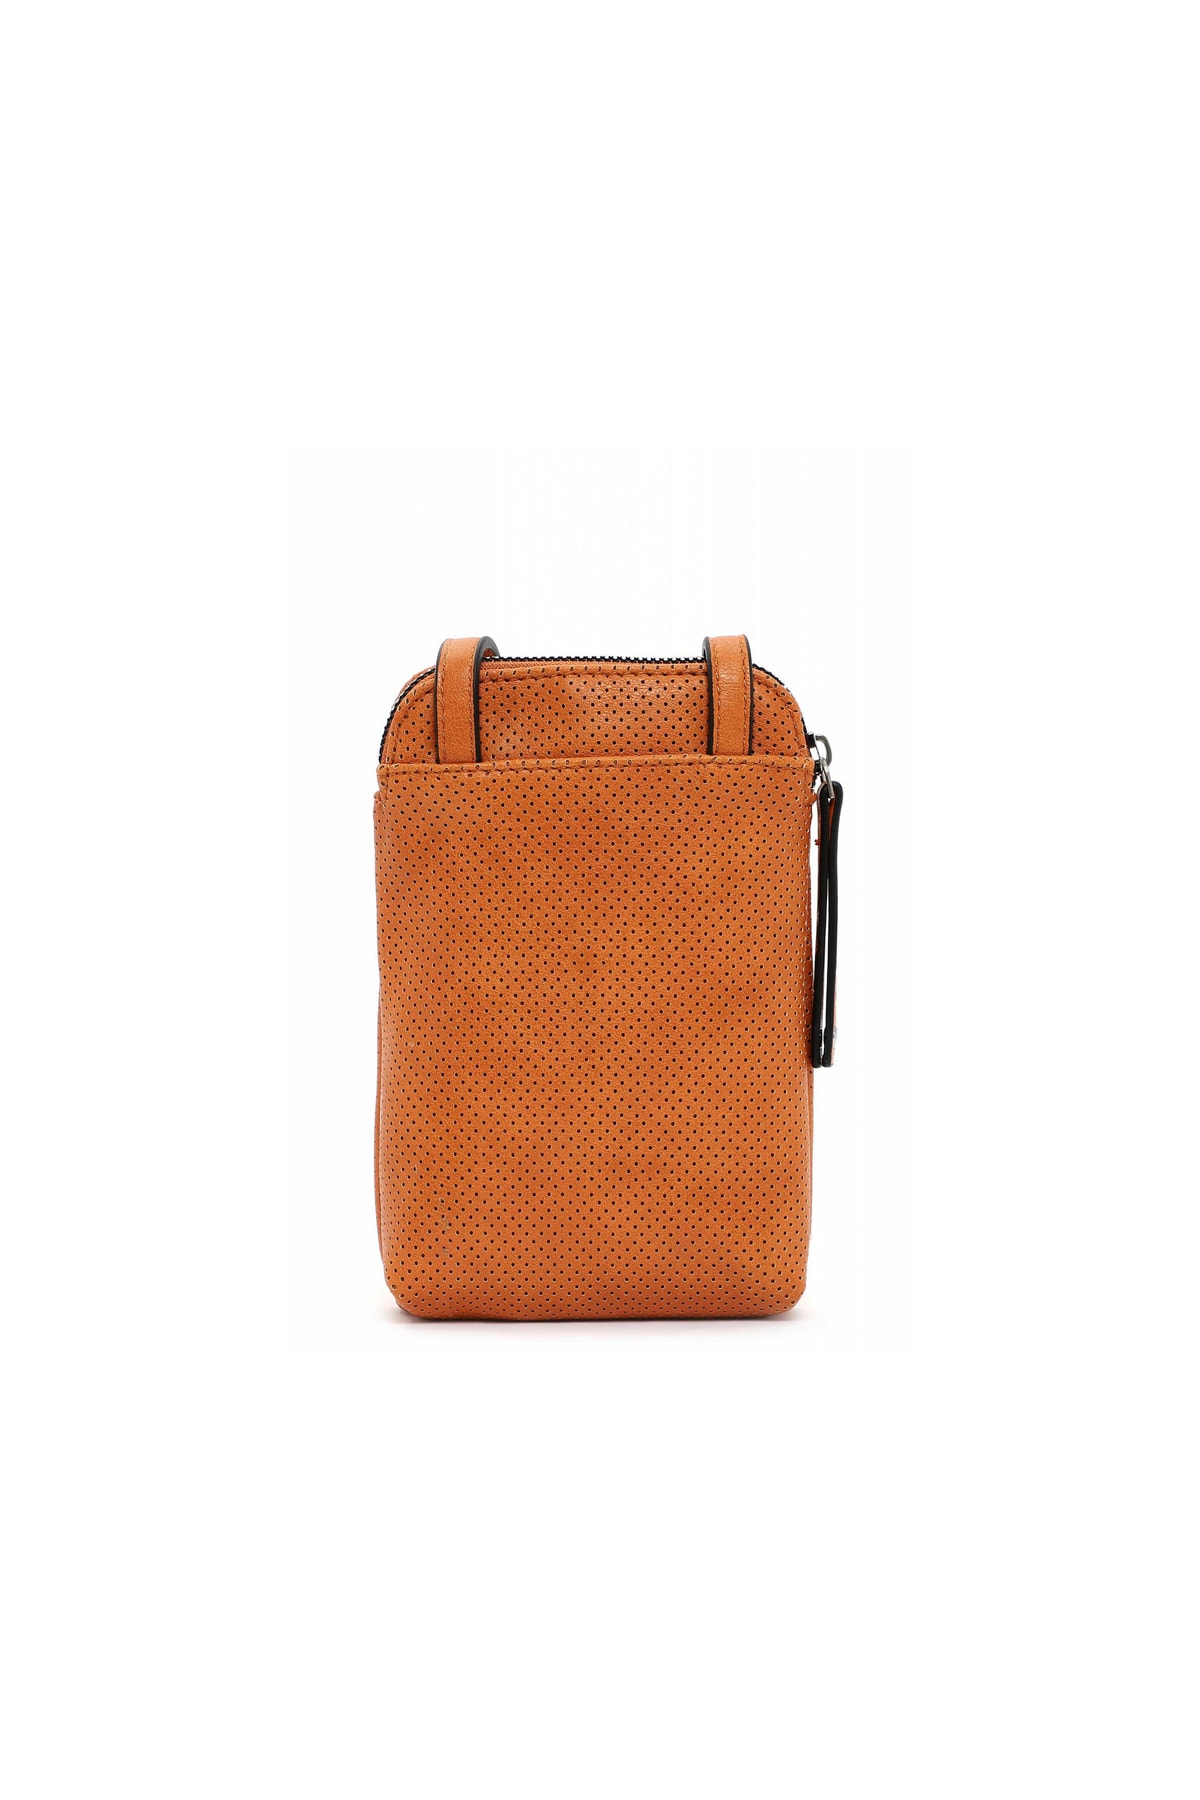 SURI FREY Handtasche Orange Strukturiert Fast ausverkauft FN8935